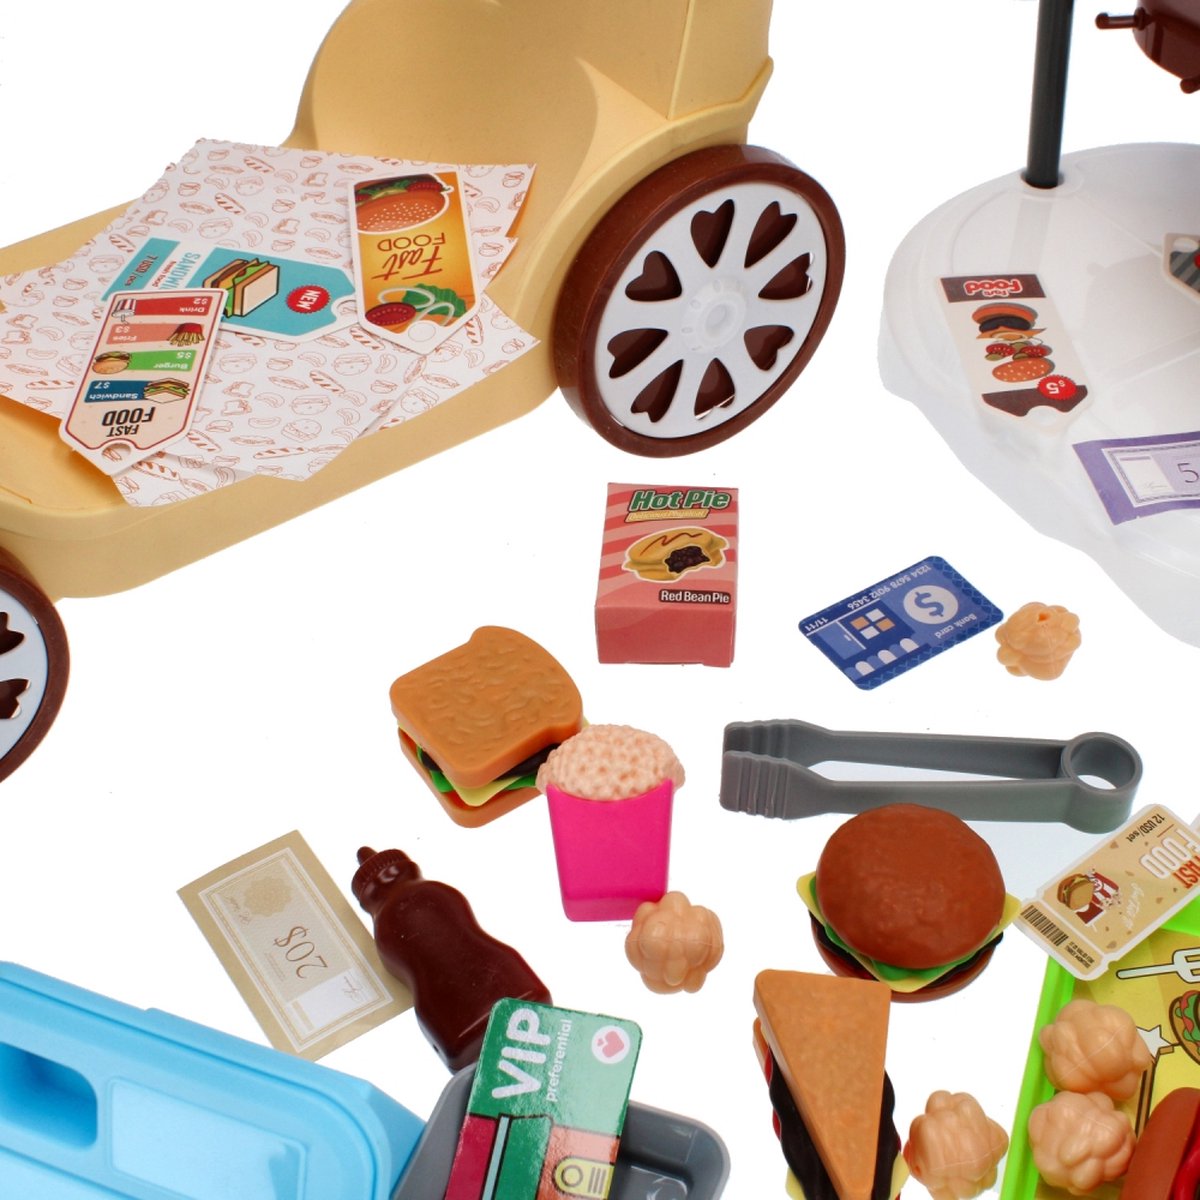 Ariko Speelgoed trolley Fast-food winkel 59 delig - hamburgers, popcorn, sauzen, tang en nog veel meer - handige meeneem koffer met wieltjes